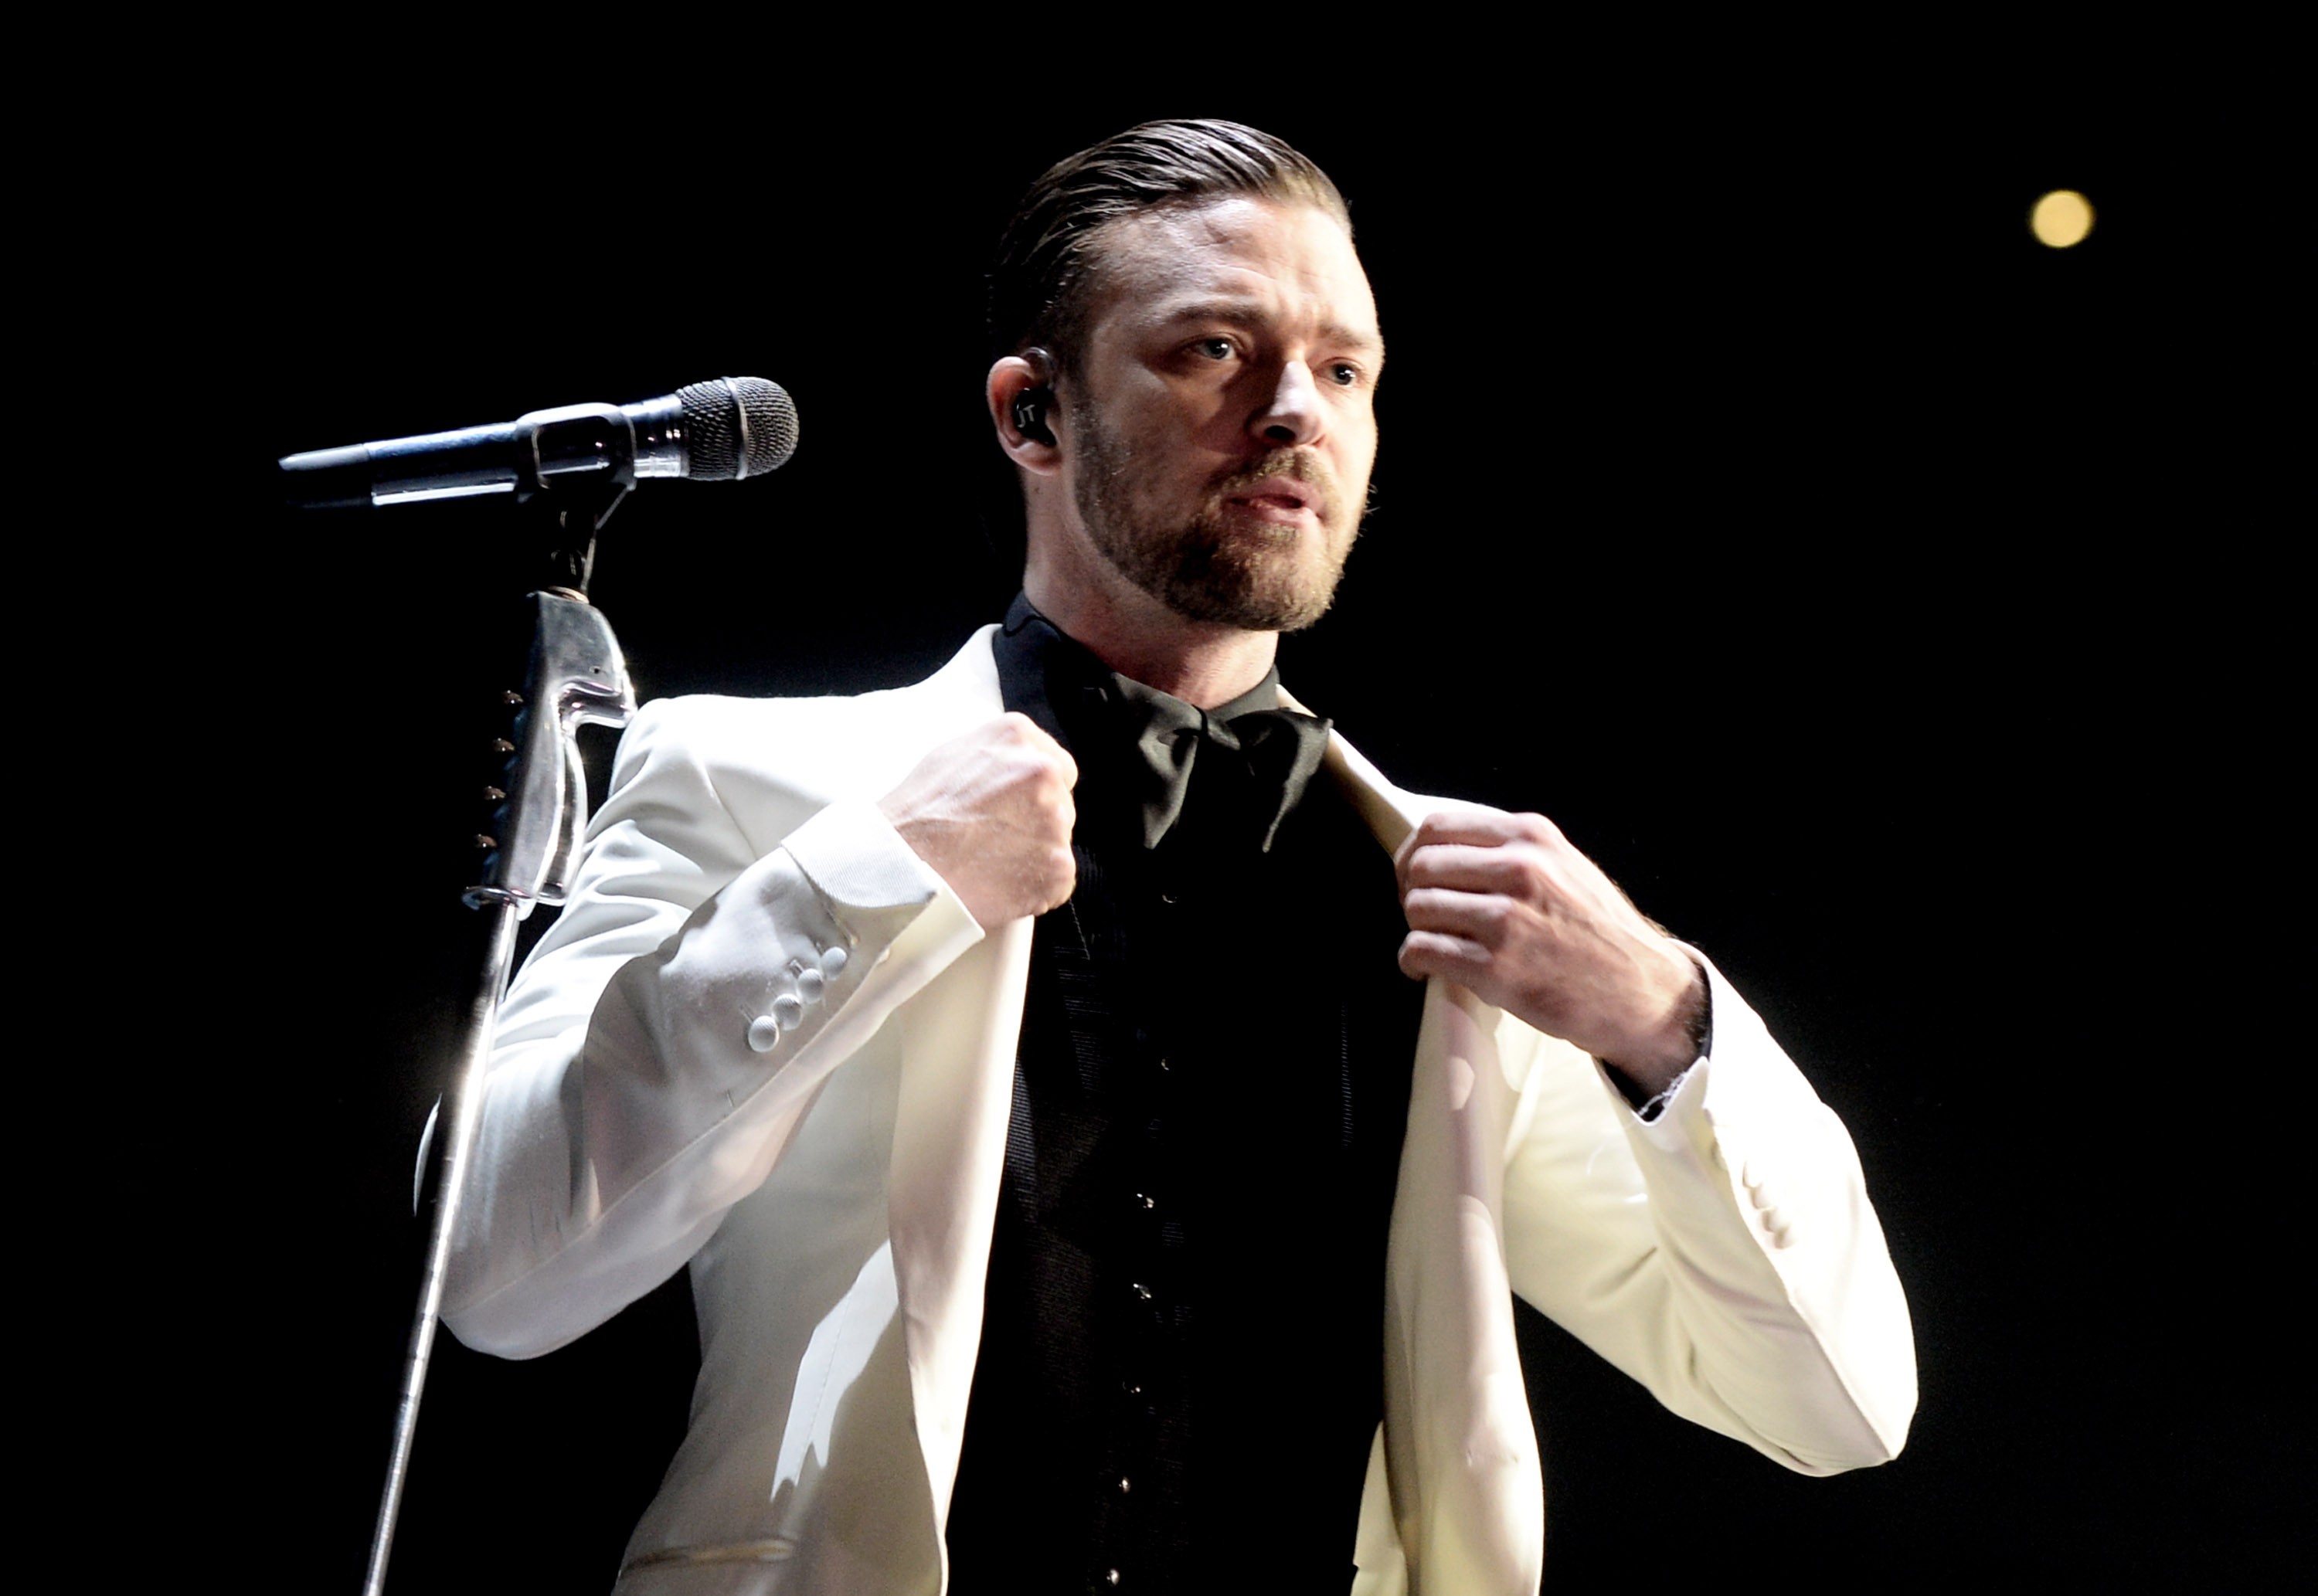 Em 2009, uma mulher (um pouco fora de si) apareceu em frente à casa de Timberlake alegando ser Deus e que ela e o cantor “estariam destinados a ficarem juntos”. Senta lá, Cláudia. (Foto: Getty Images)